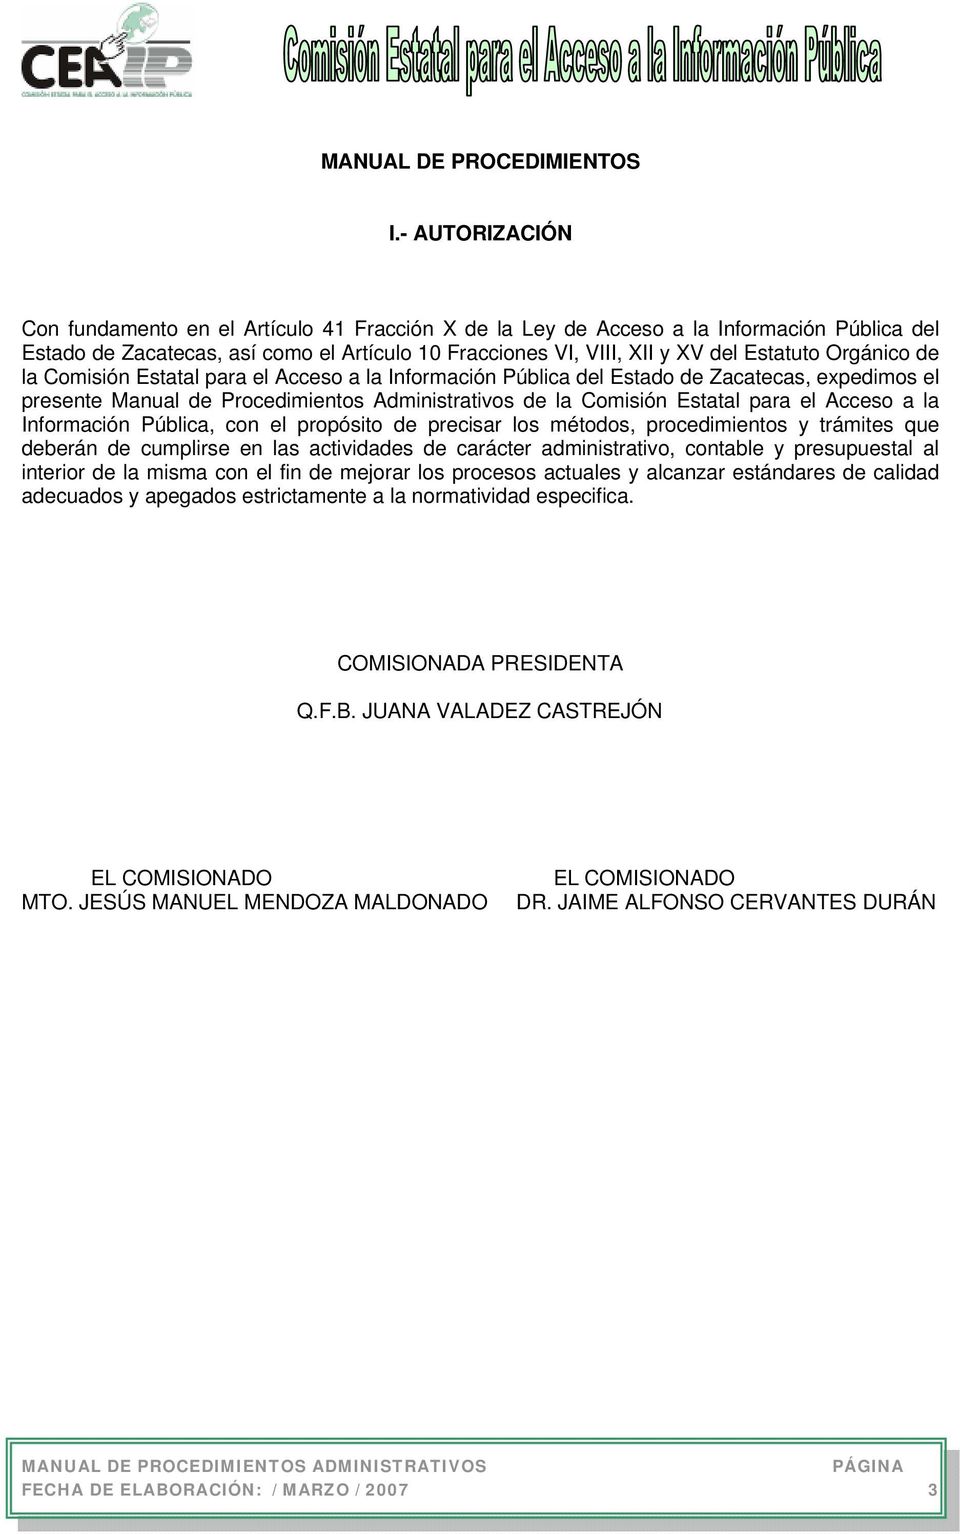 Orgánico de la Comisión Estatal para el Acceso a la Información Pública del Estado de Zacatecas, expedimos el presente Manual de Procedimientos Administrativos de la Comisión Estatal para el Acceso a